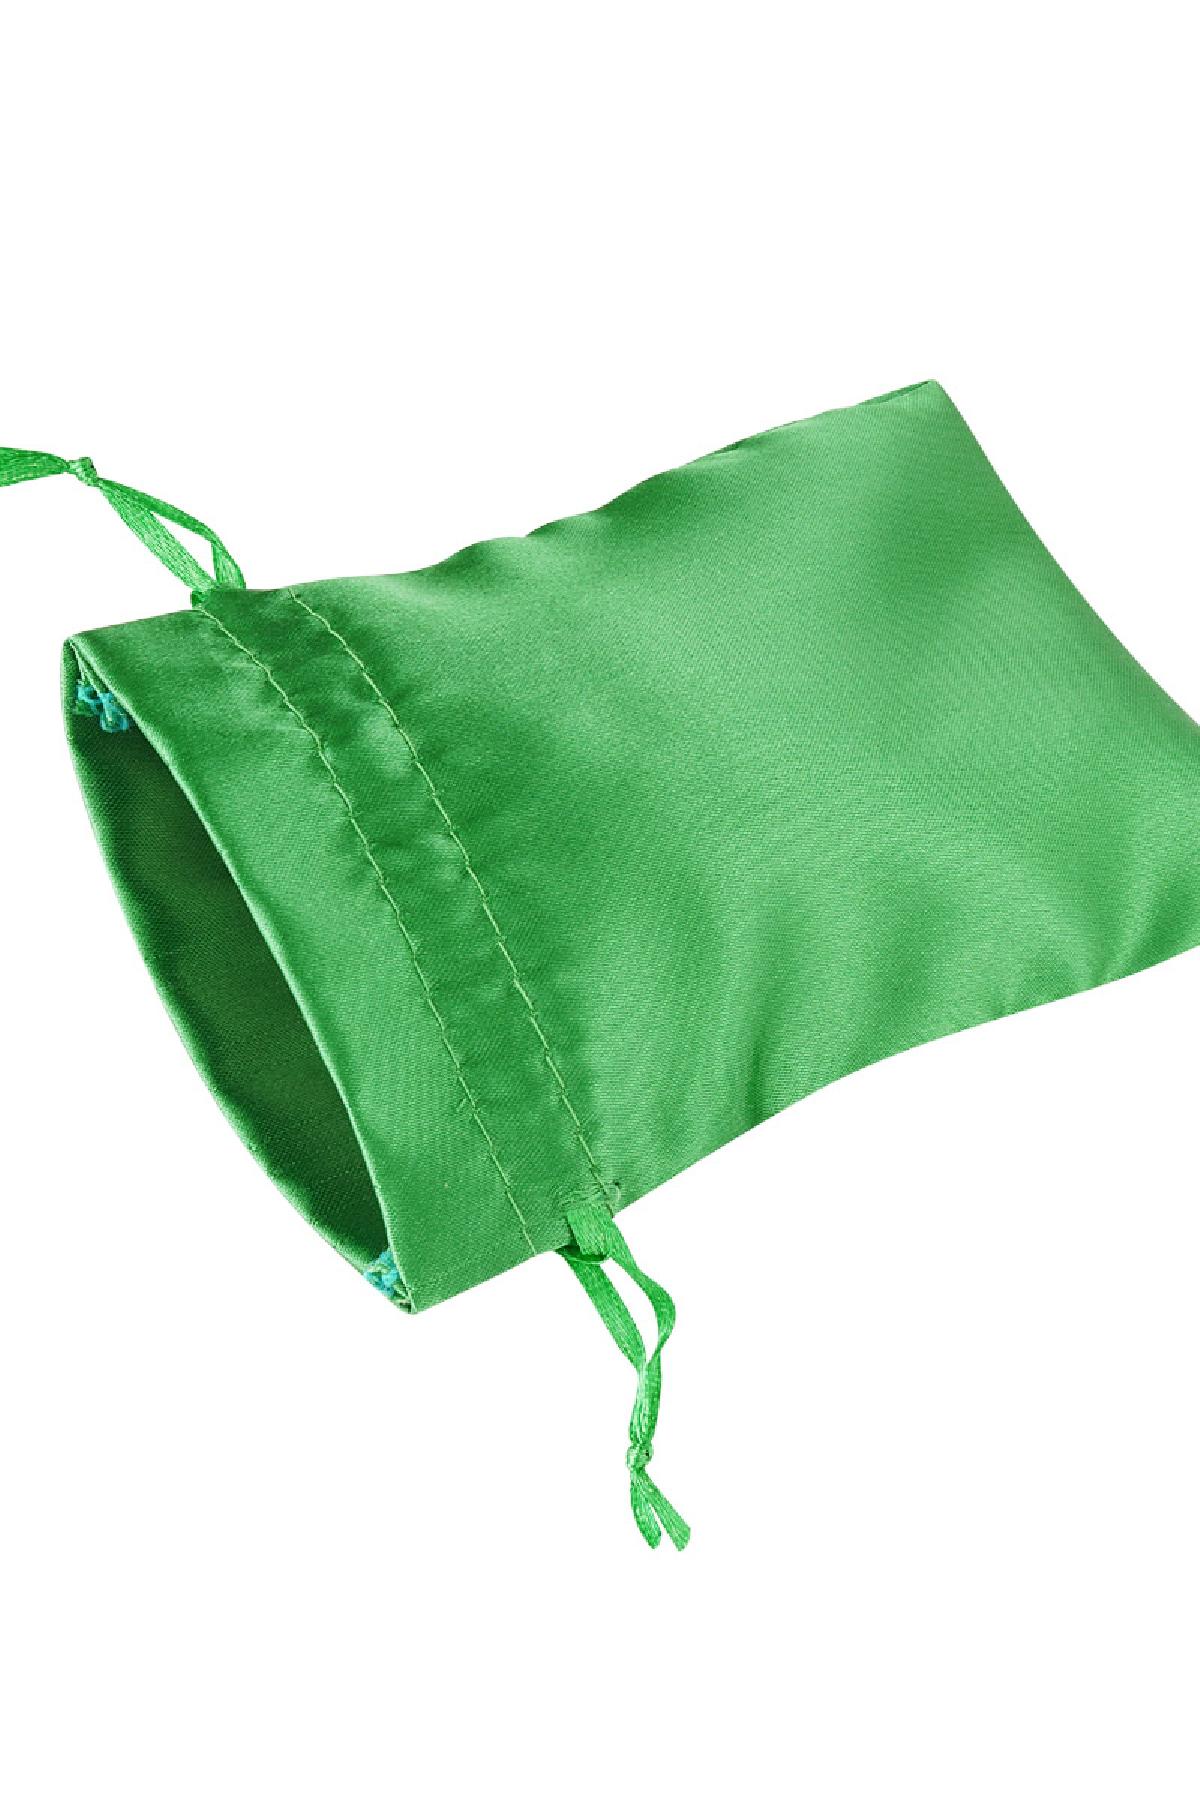 Schmuckbeutel Satin klein - grün Polyester Bild2